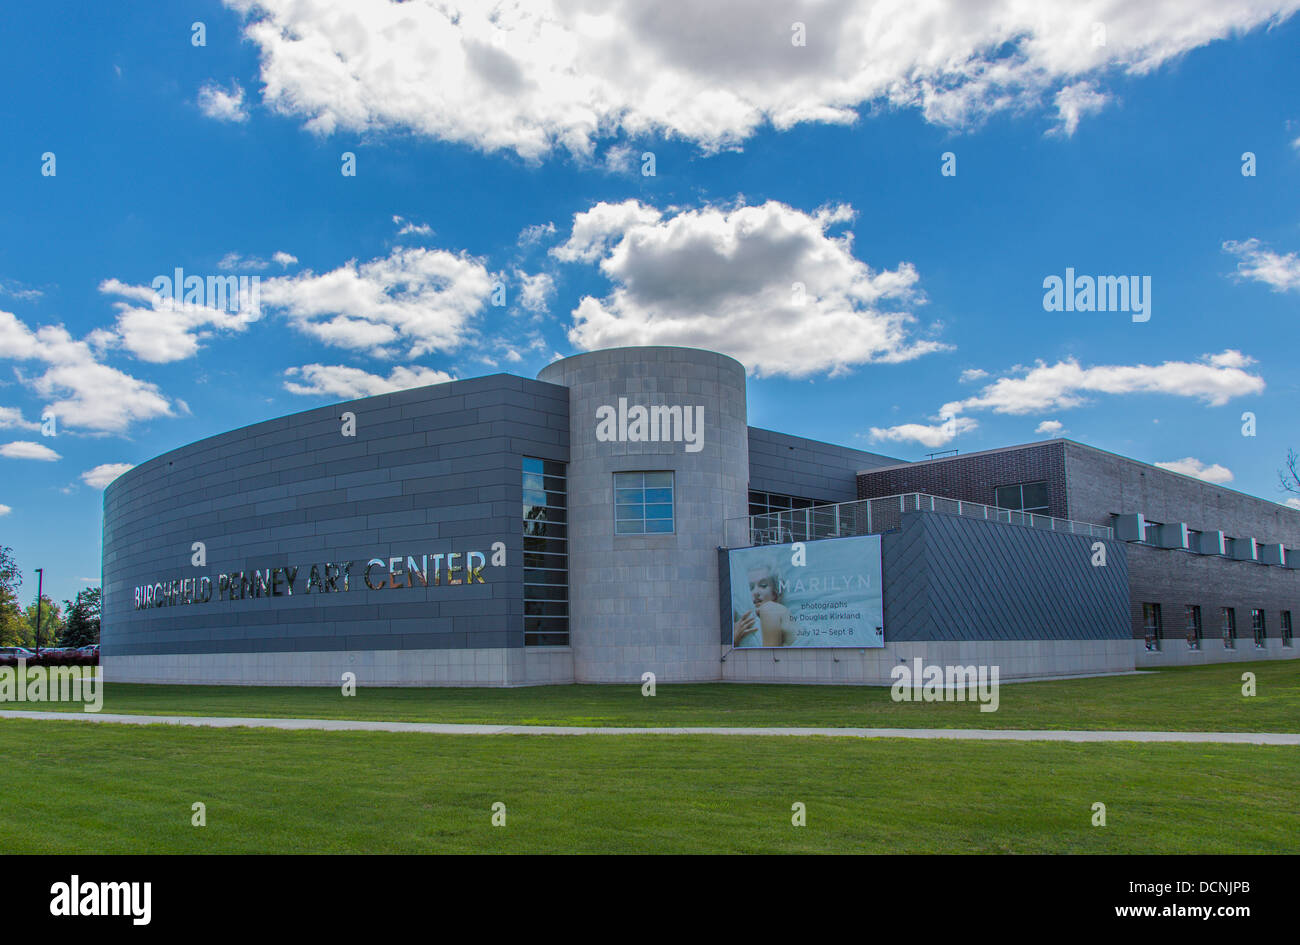 Die Burchfield Penney Art Center in Stadt von Buffalo New York, Vereinigte Staaten in der Stadt Buffalo New York Vereinigte Staaten Stockfoto